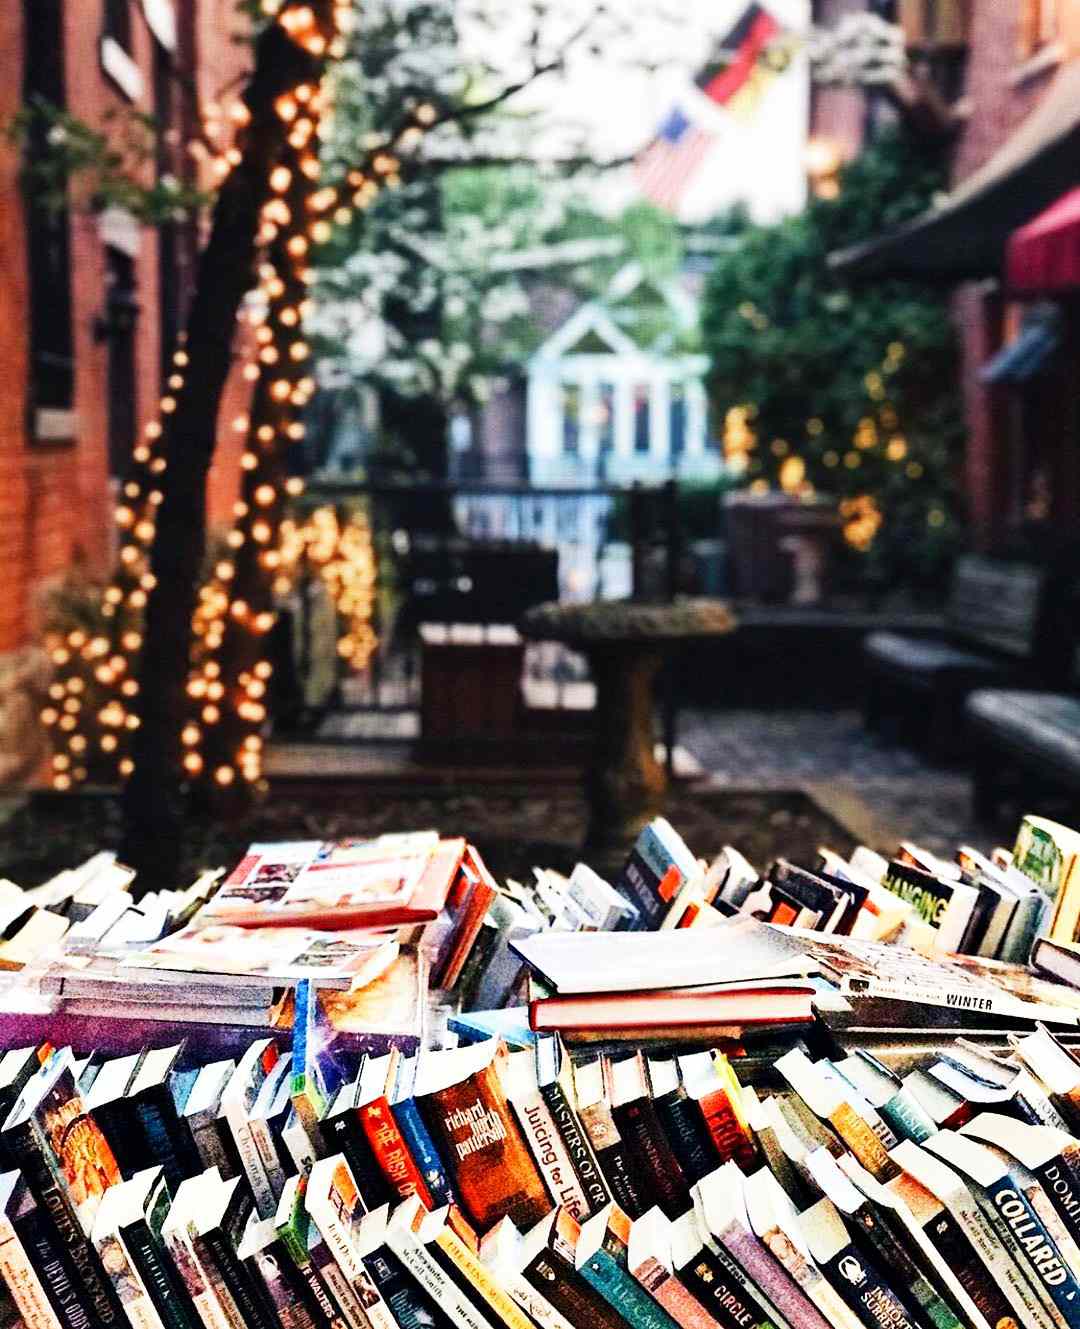 Columbus, Ohio bookstore